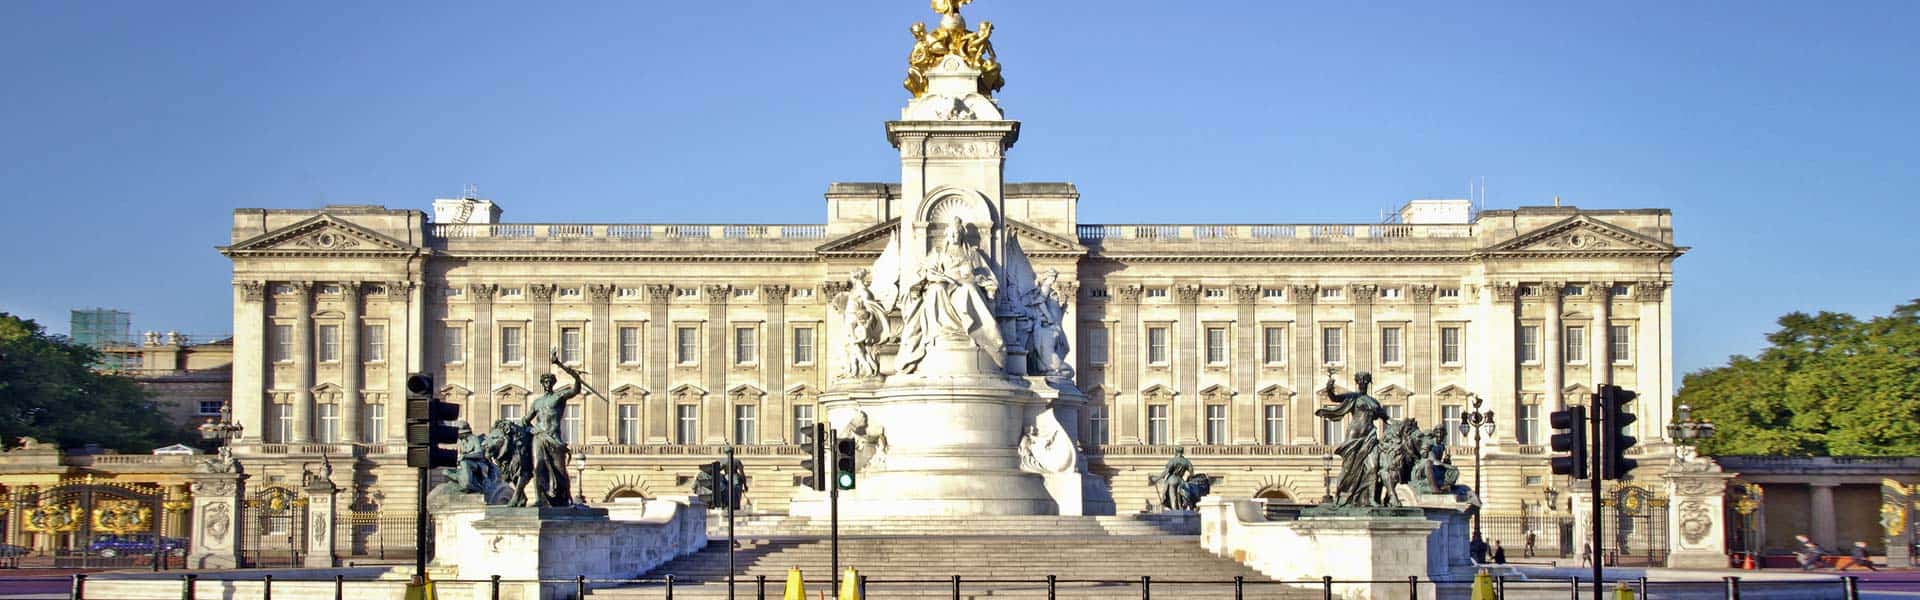 Königliches erleben und staunen: im Buckingham Palace in London